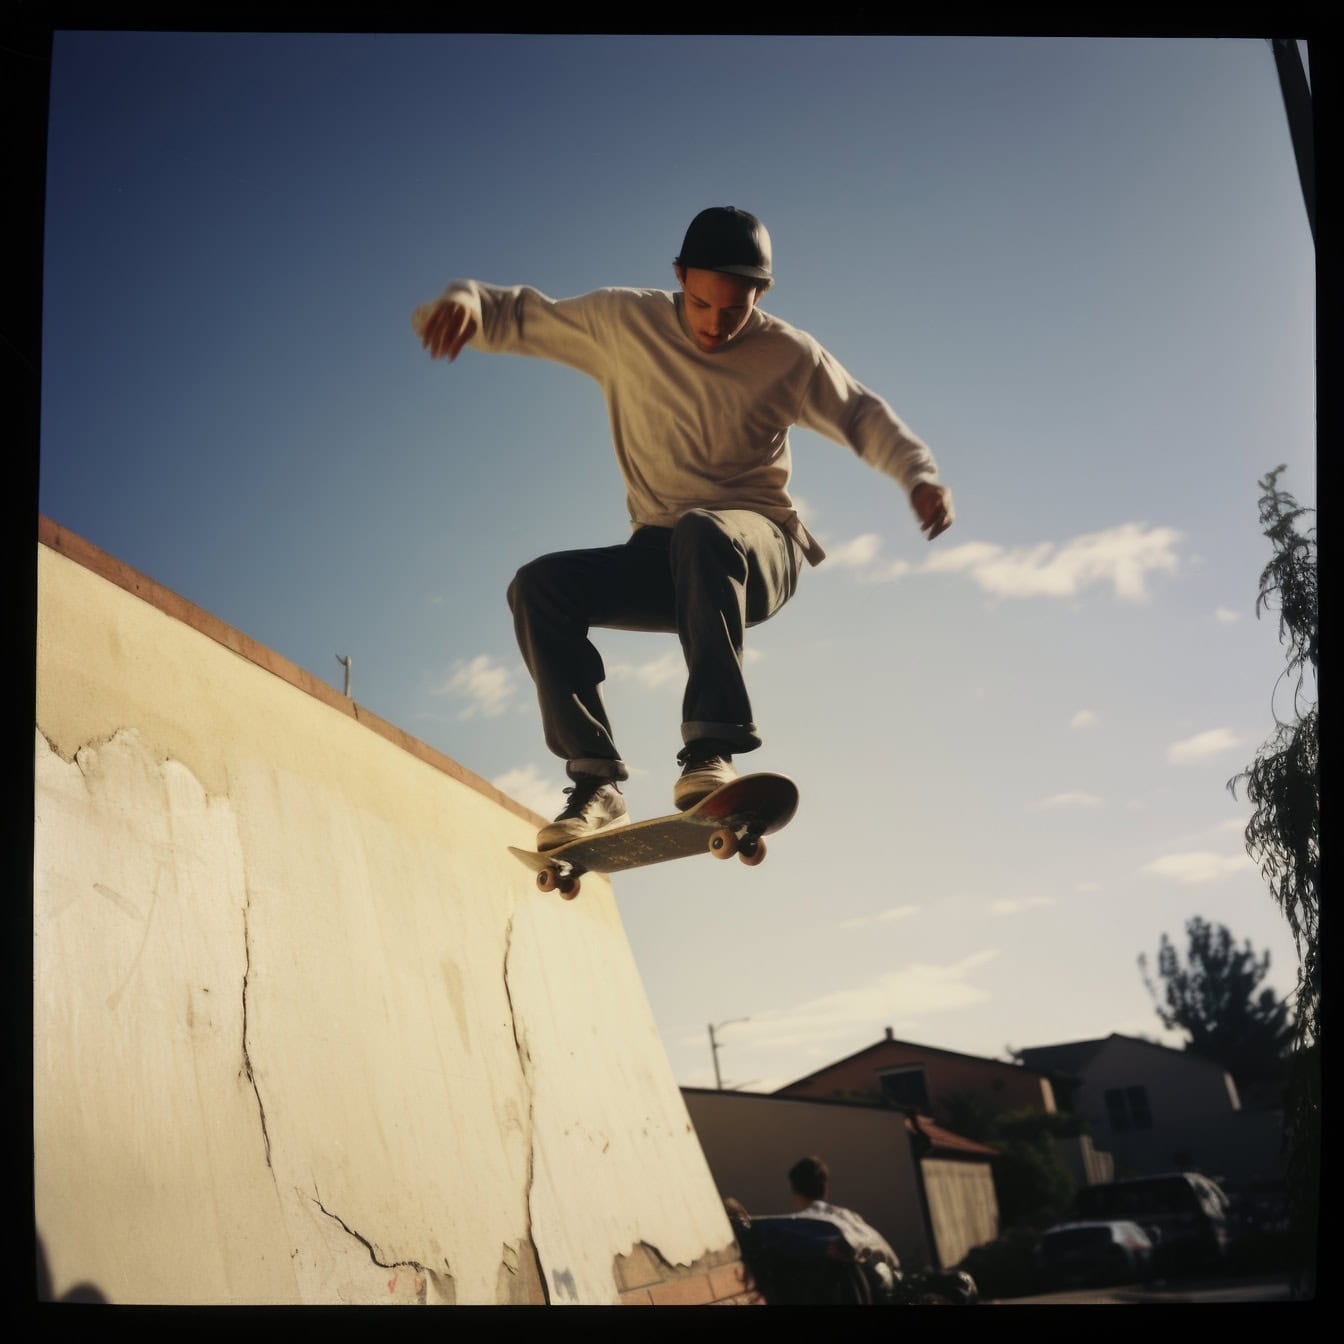 Stará polaroidová fotografie mladého muže, který skáče z rampy na skateboardu jako kaskadér